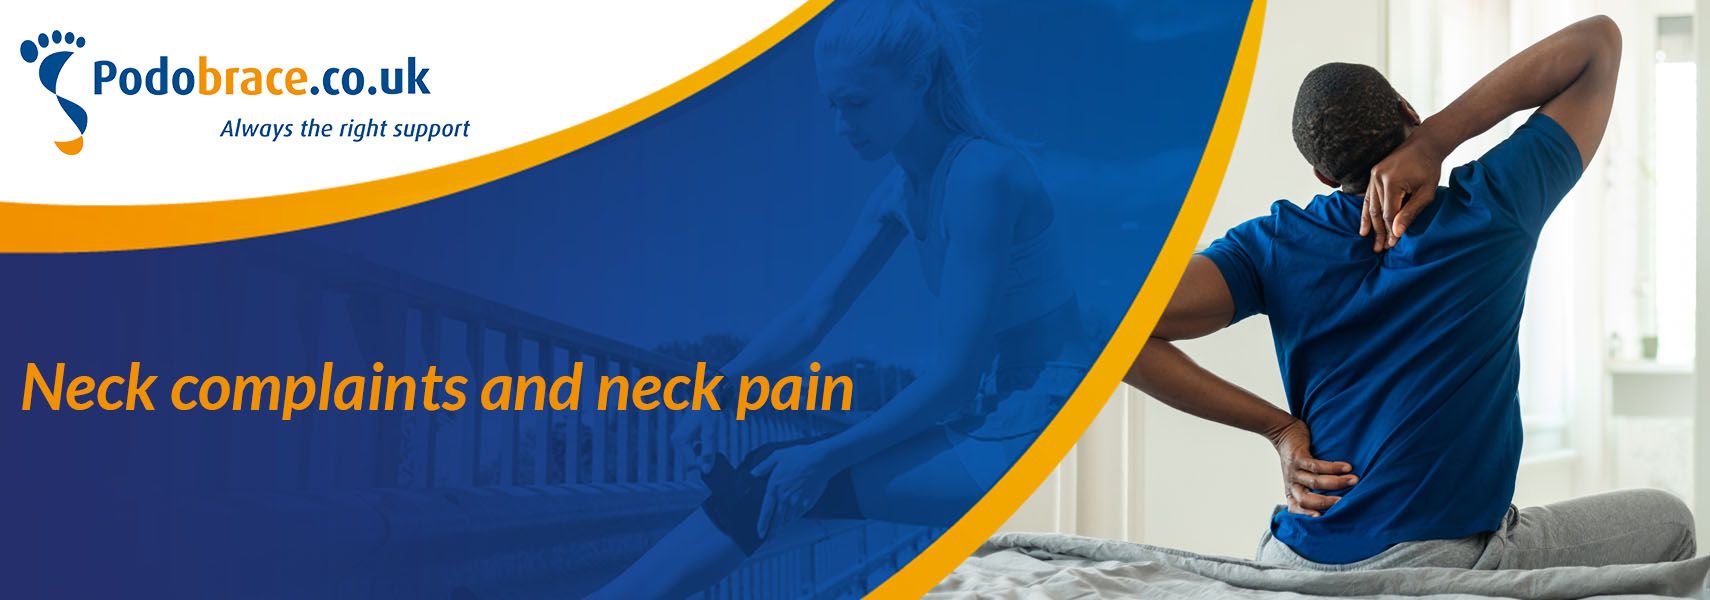 Neck complaints and neck pain